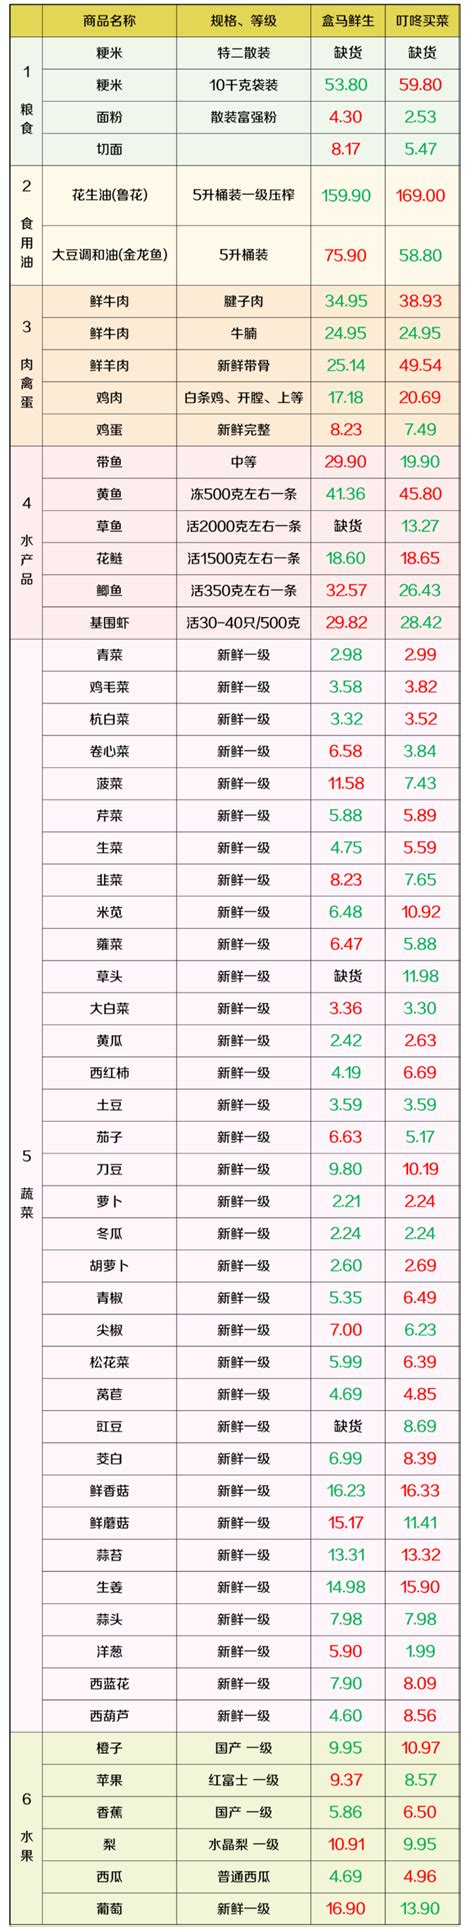 上海虹口区最新物价信息(7月8日发布) - 上海慢慢看